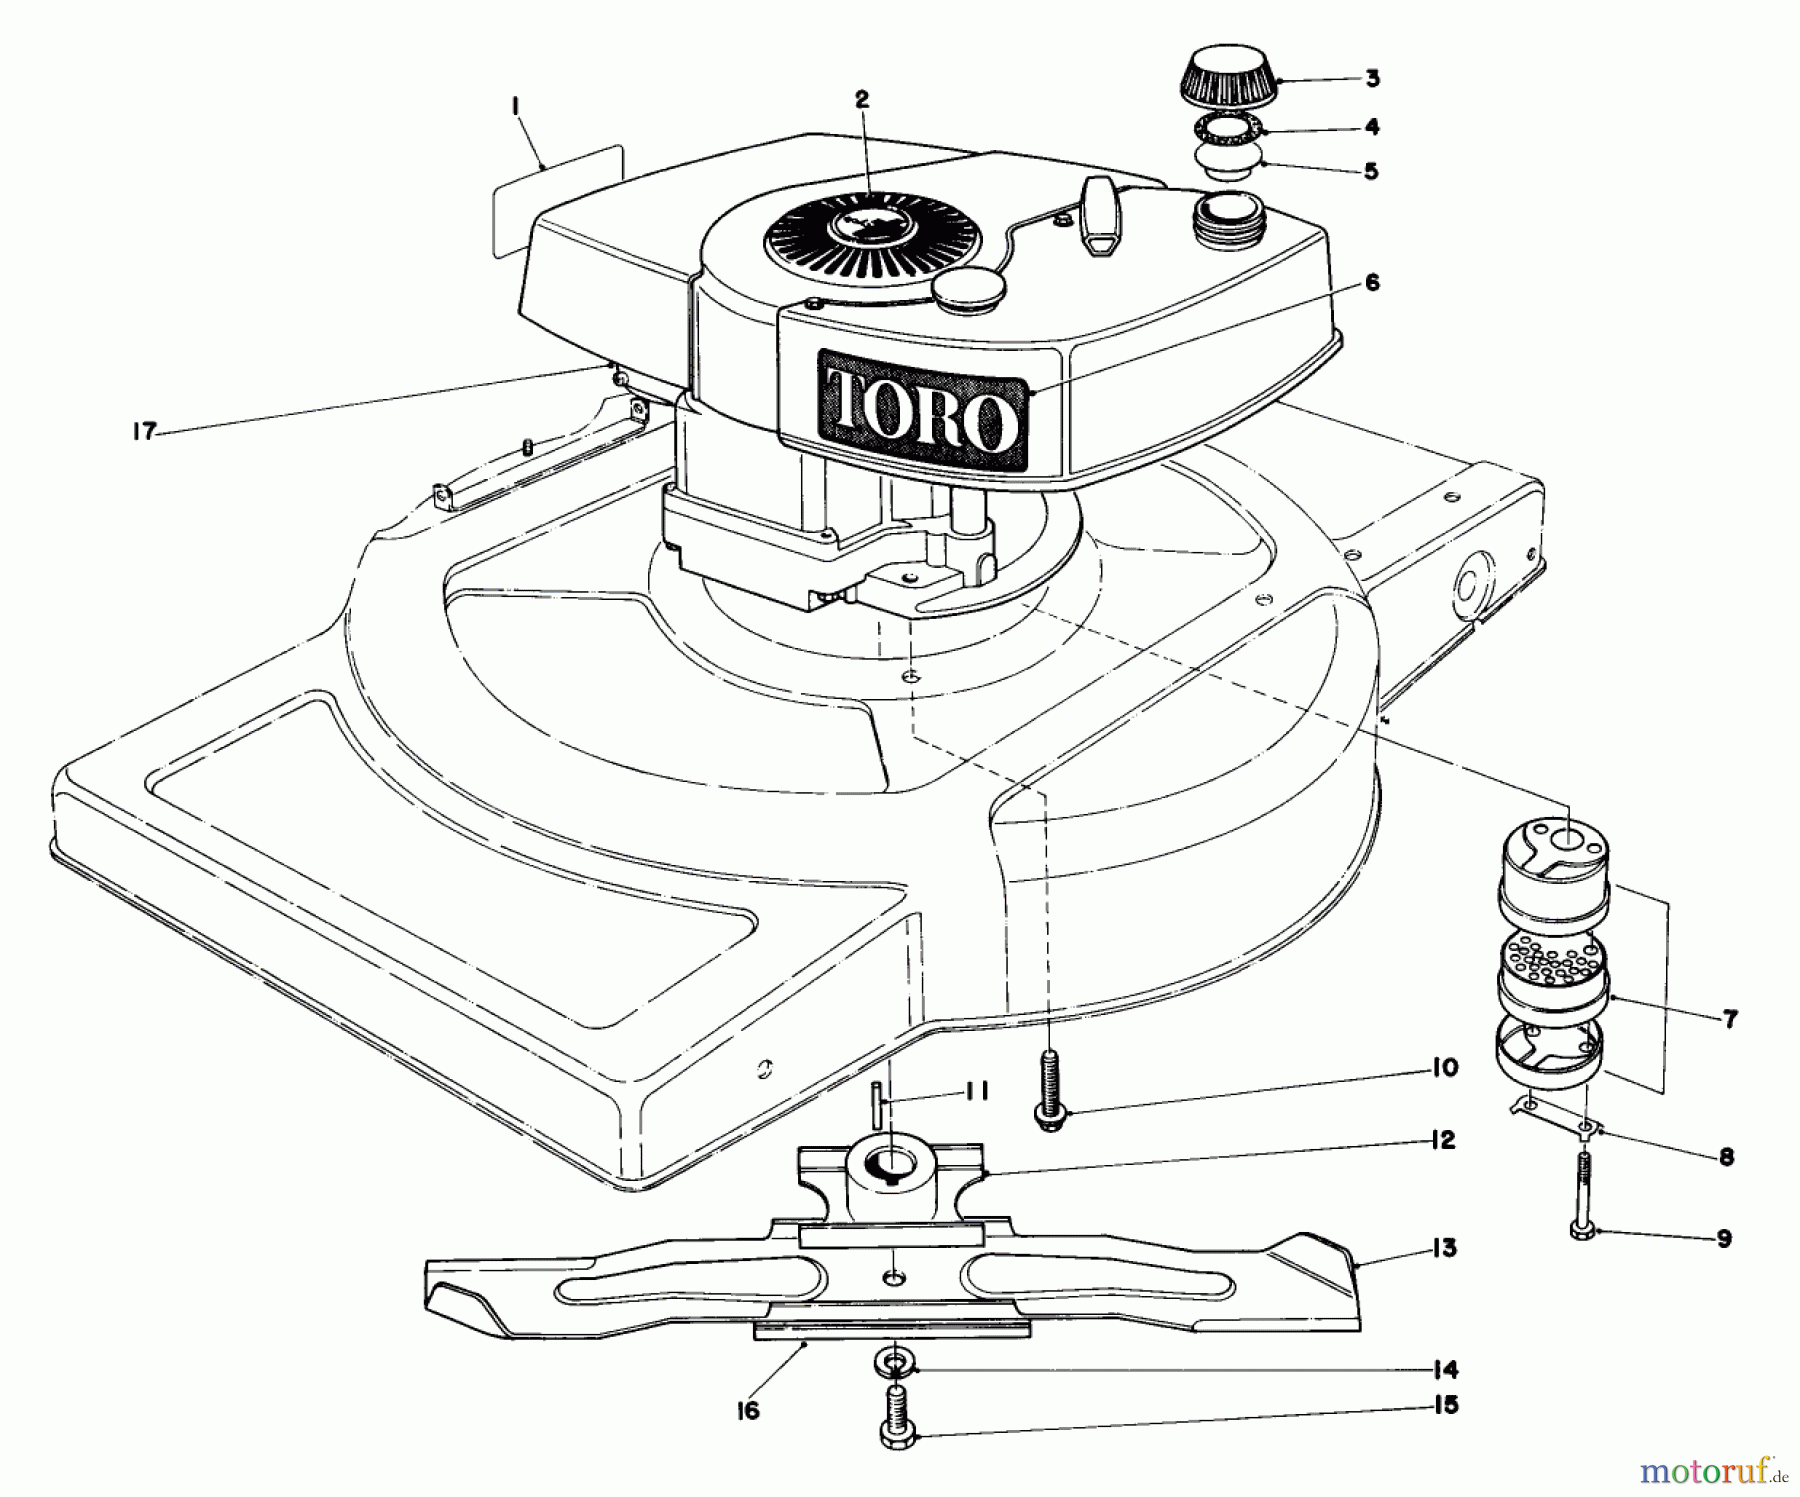  Toro Neu Mowers, Walk-Behind Seite 1 18005 - Toro Lawnmower, 1982 (2000001-2999999) ENGINE ASSEMBLY MODEL 18005